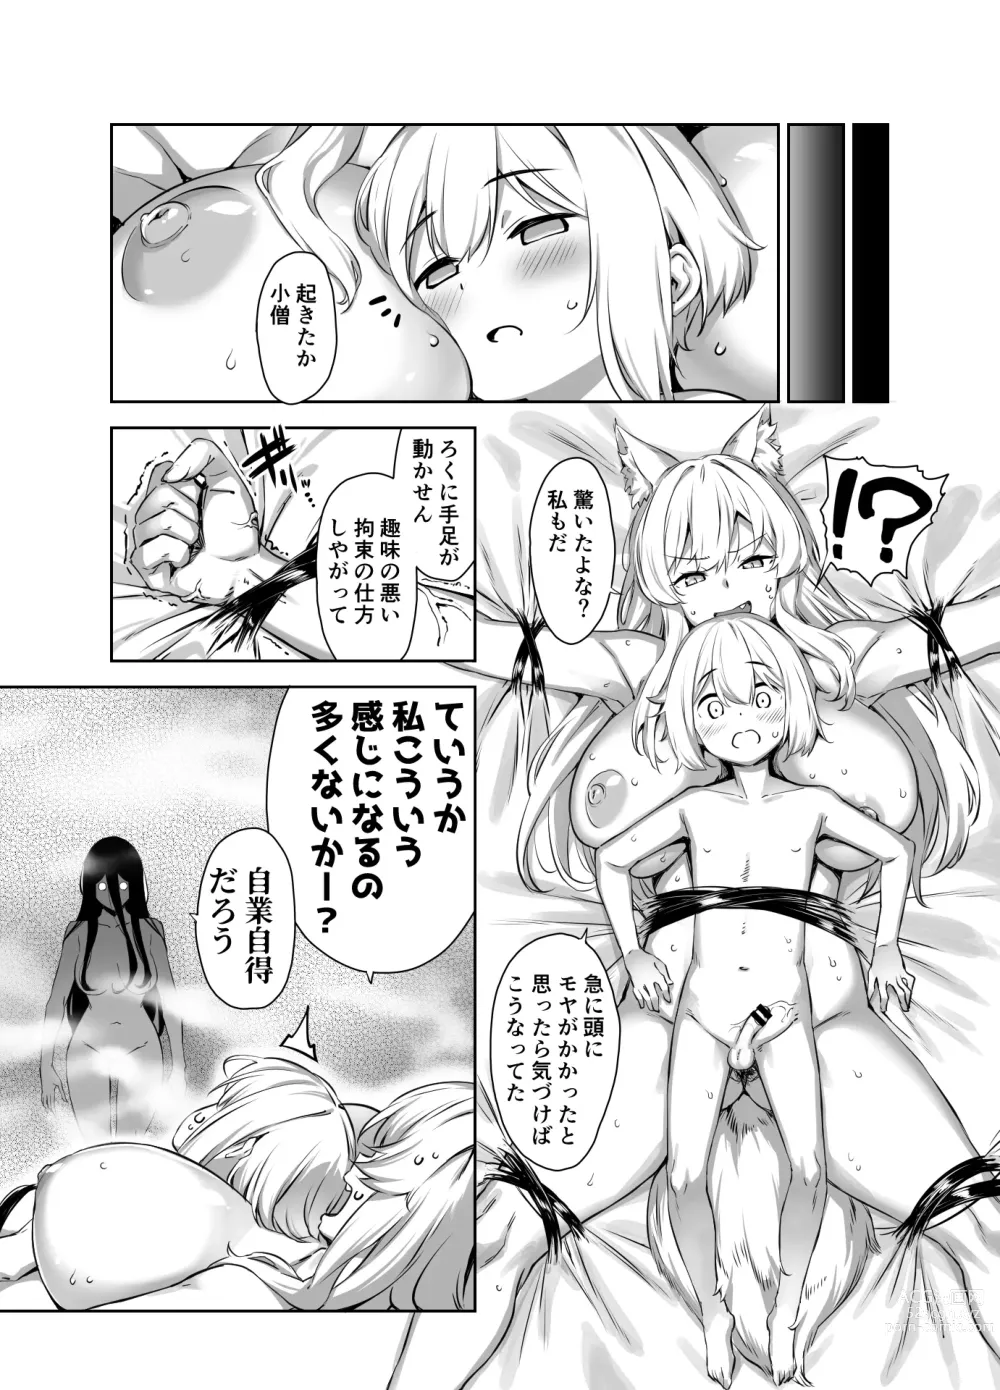 Page 9 of doujinshi Omake Manga